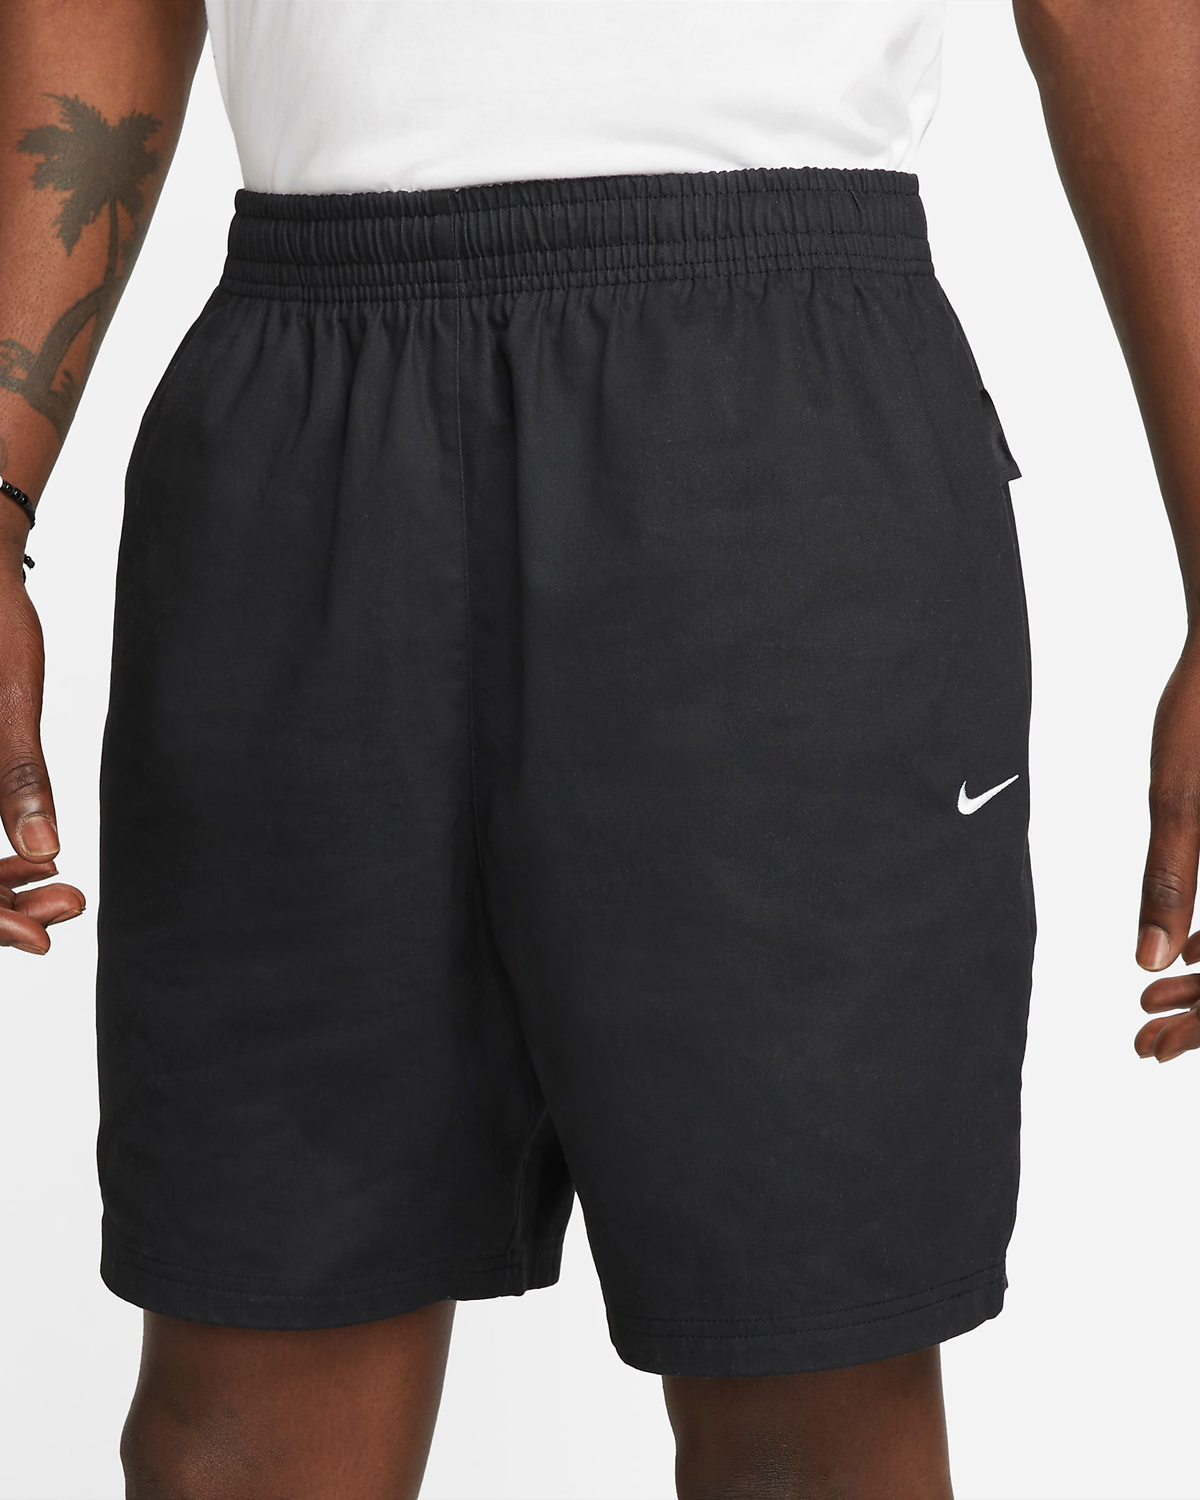 Nike-SB-Skate-Shorts-Black-White